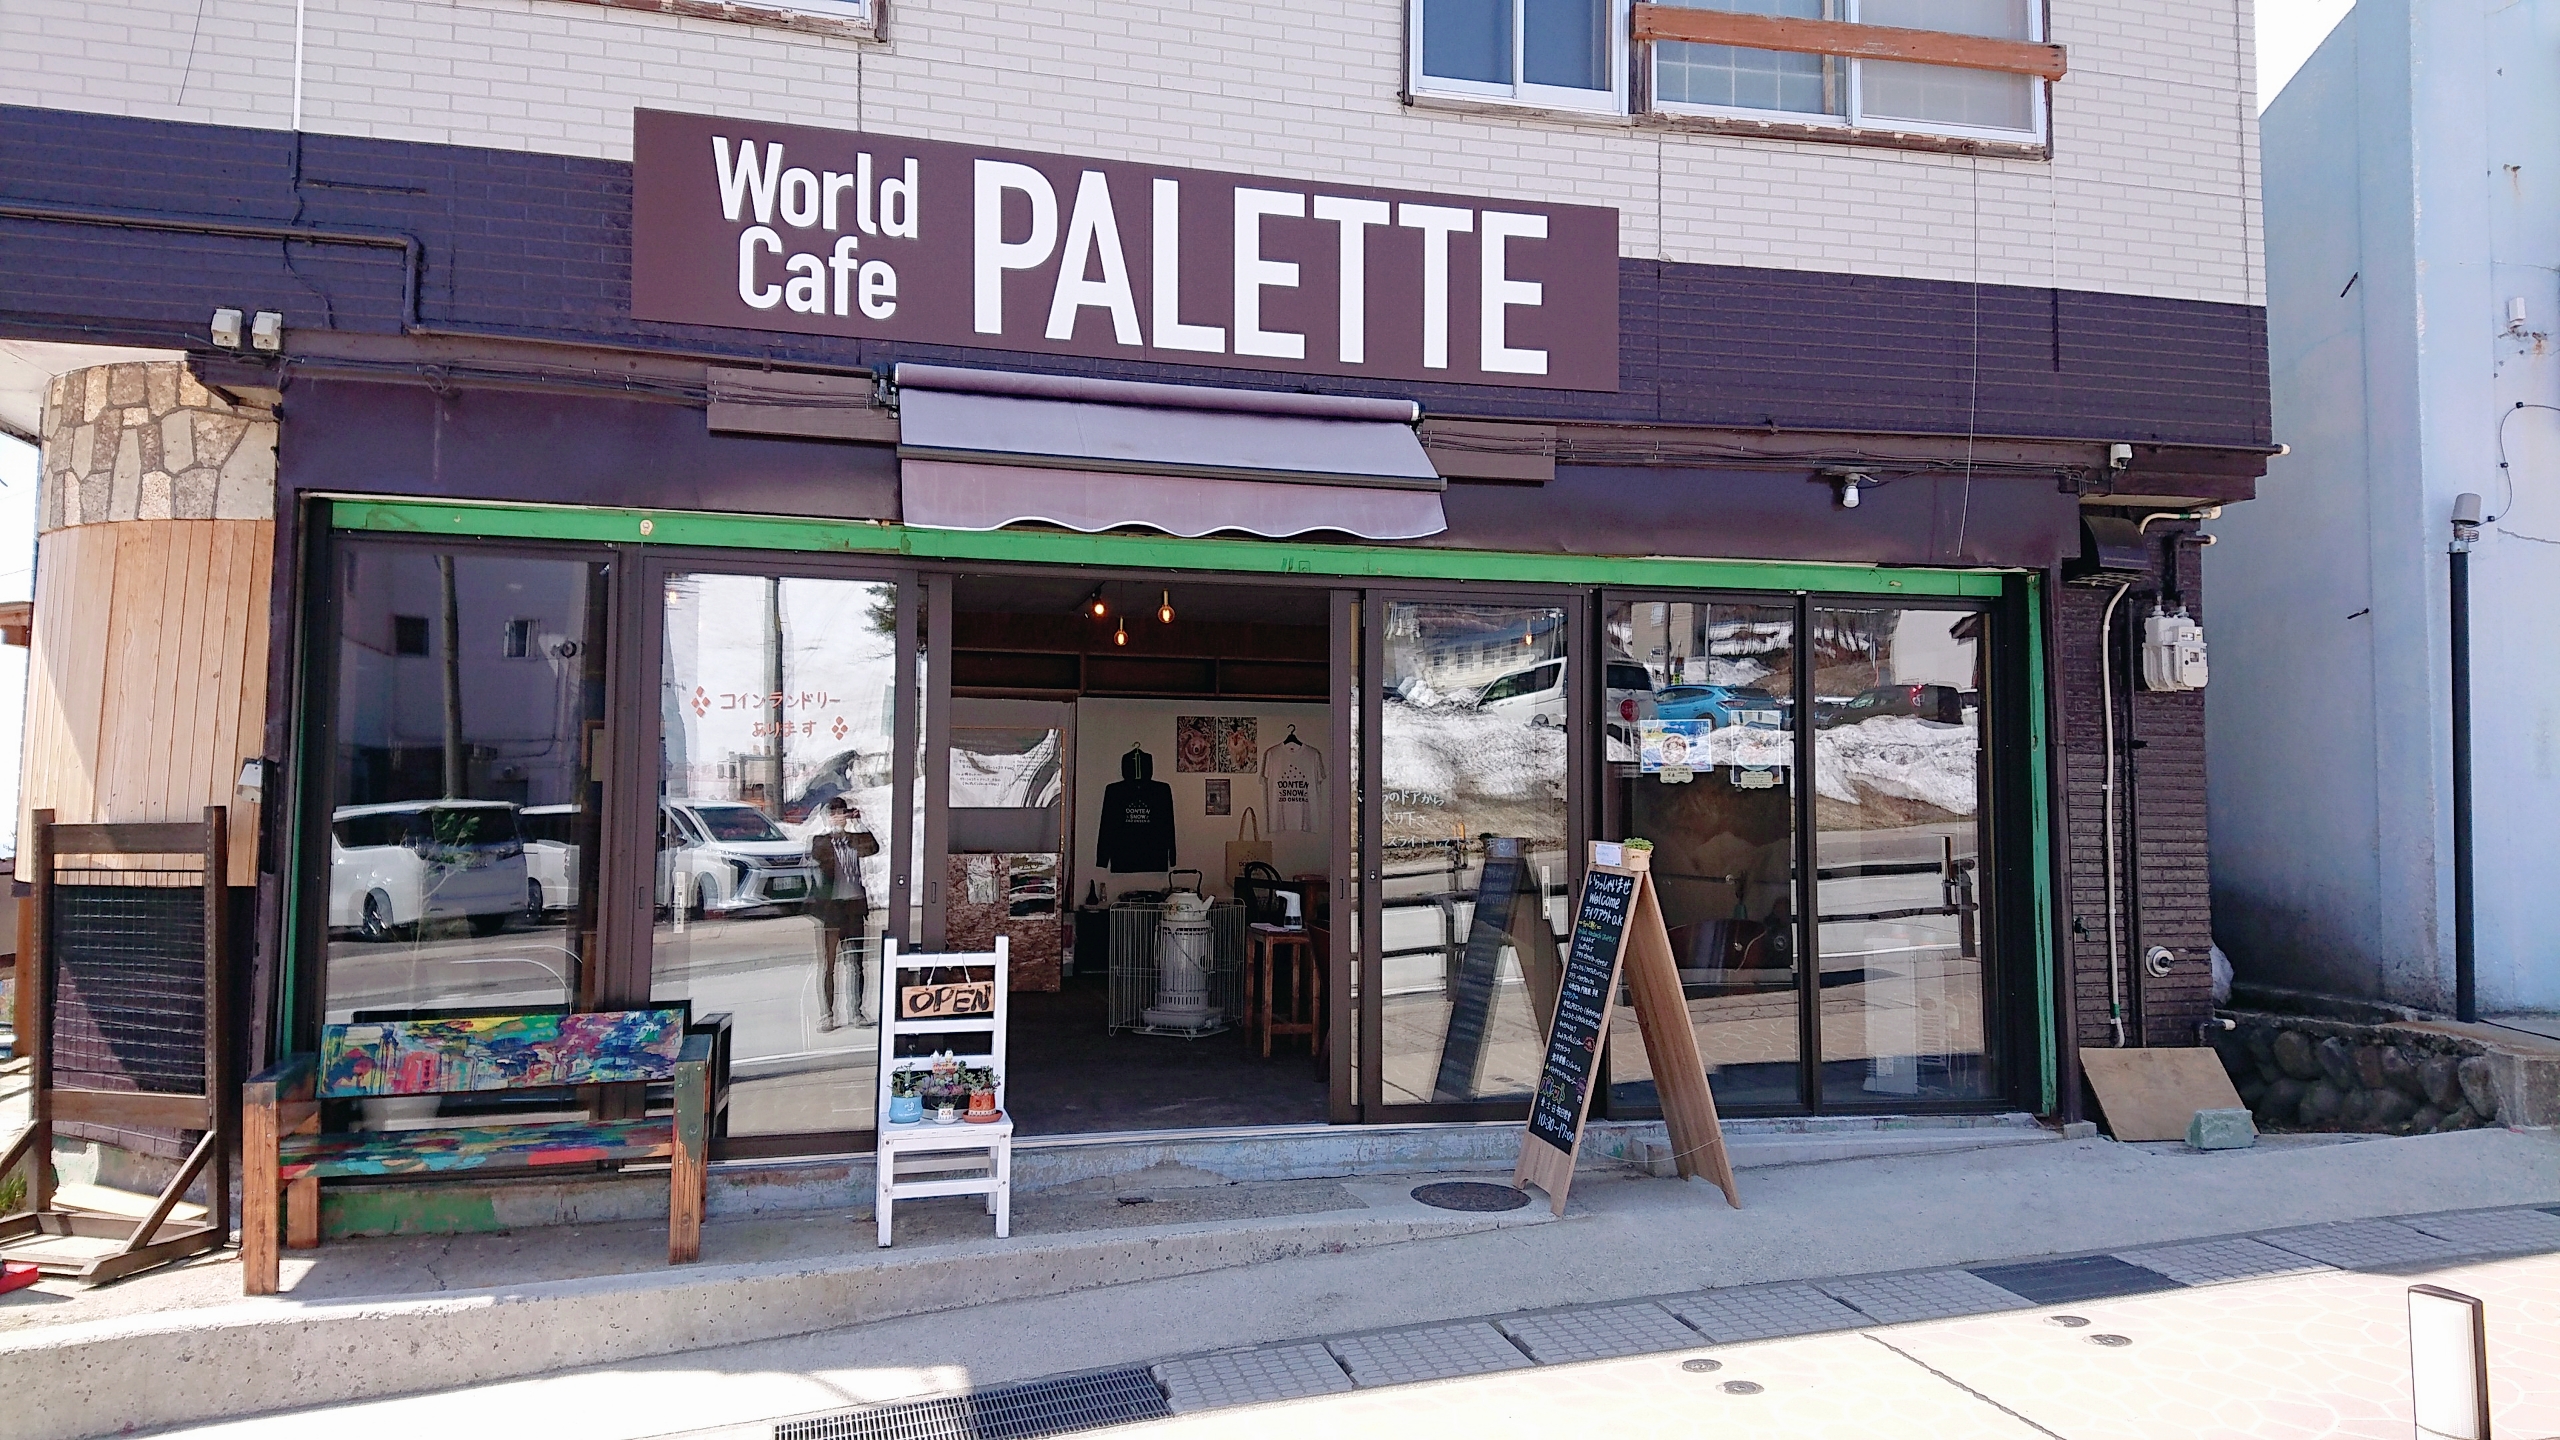 旅先でもオシャレに快適・便利に過ごす【WiFi・カフェ・コインランドリー】World Cafe PALETTE （ワールドカフェ パレット）